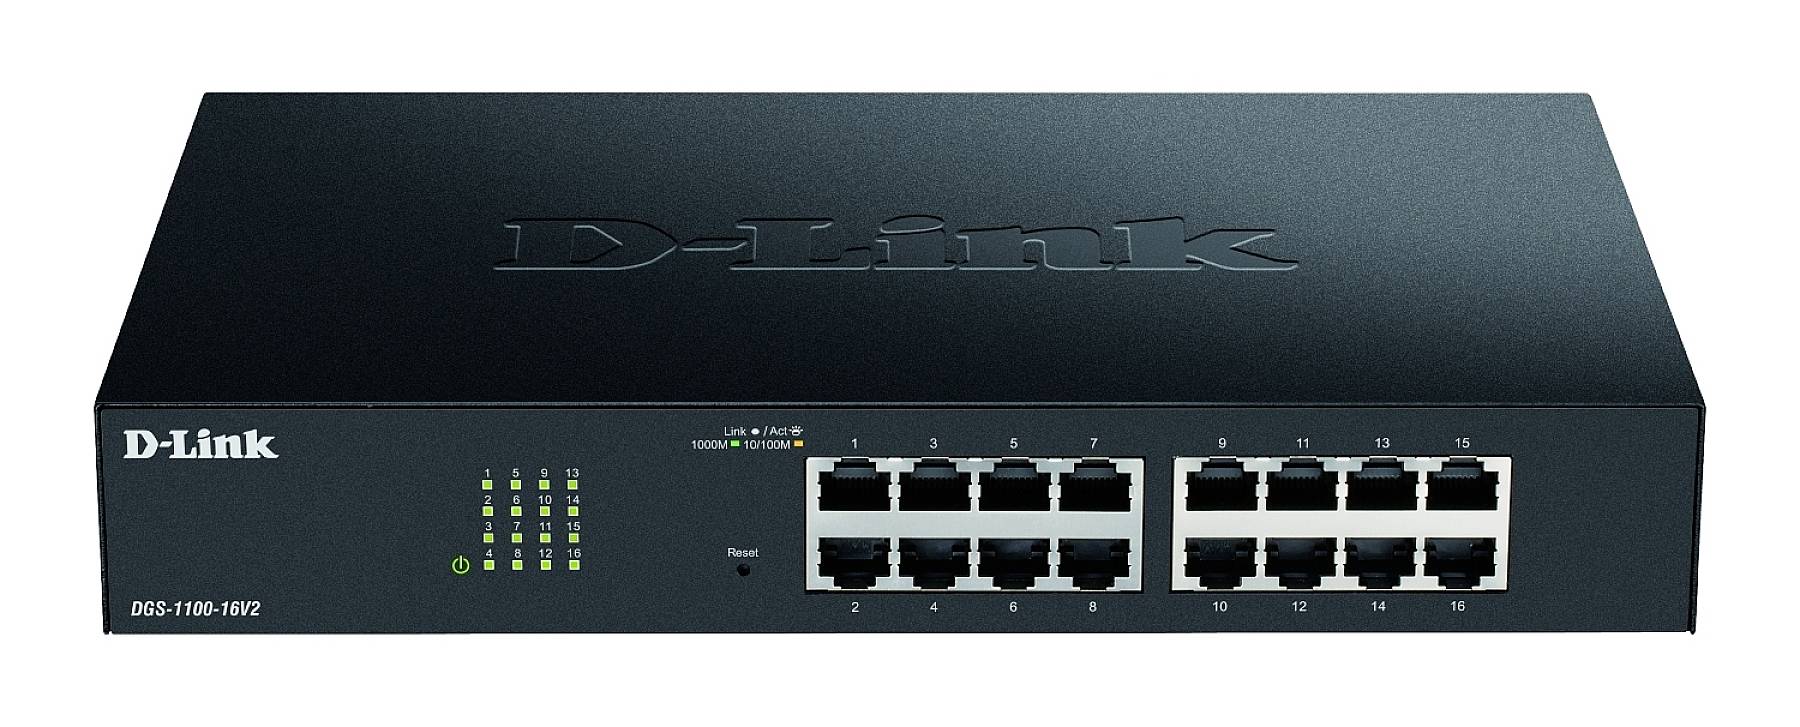 D-LINK 16-Port Layer2 Smart Gigabit Switch, 16x 10/100/1000Mbit/s TP (RJ-45) Port